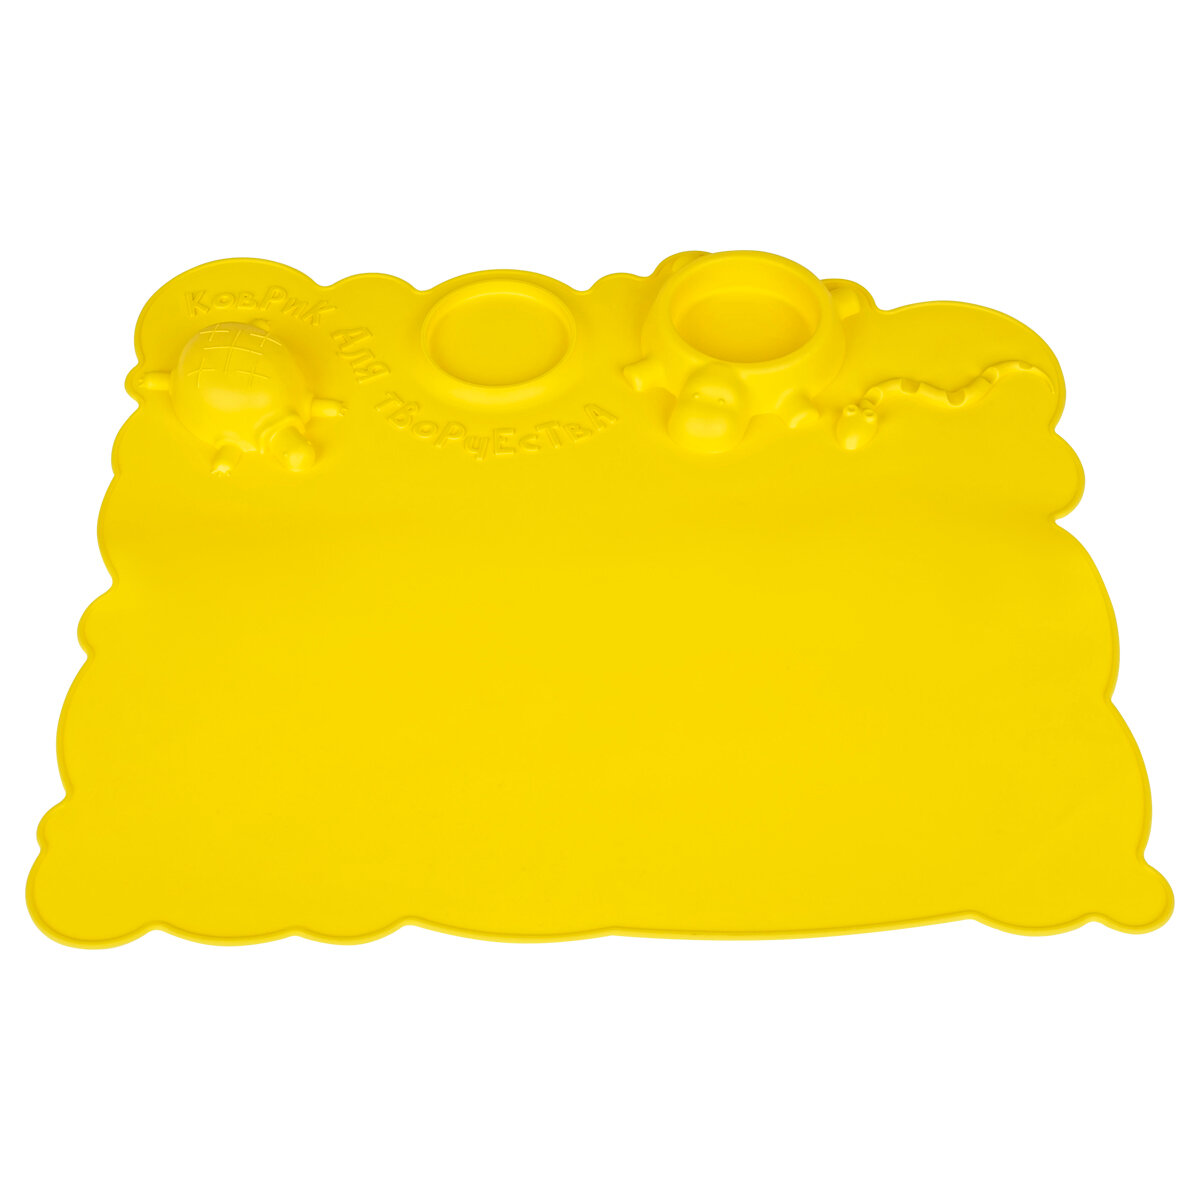 Коврик для творчества Мульти-Пульти силиконовый, желтый, 415*370мм, европодвес